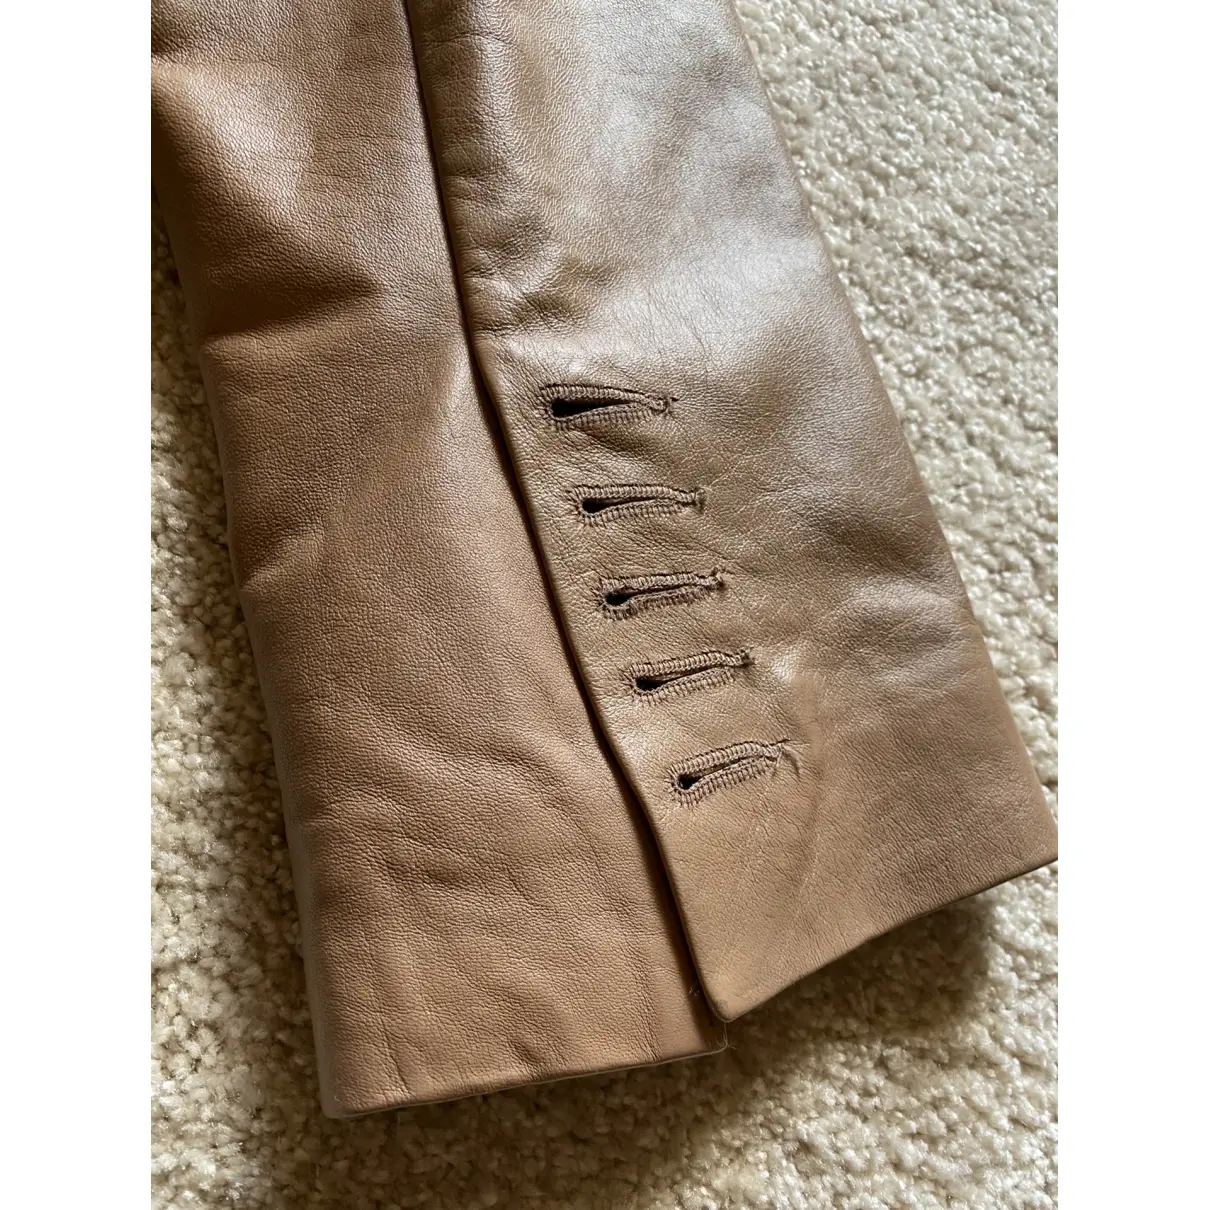 Buy Zadig & Voltaire Leather short vest online